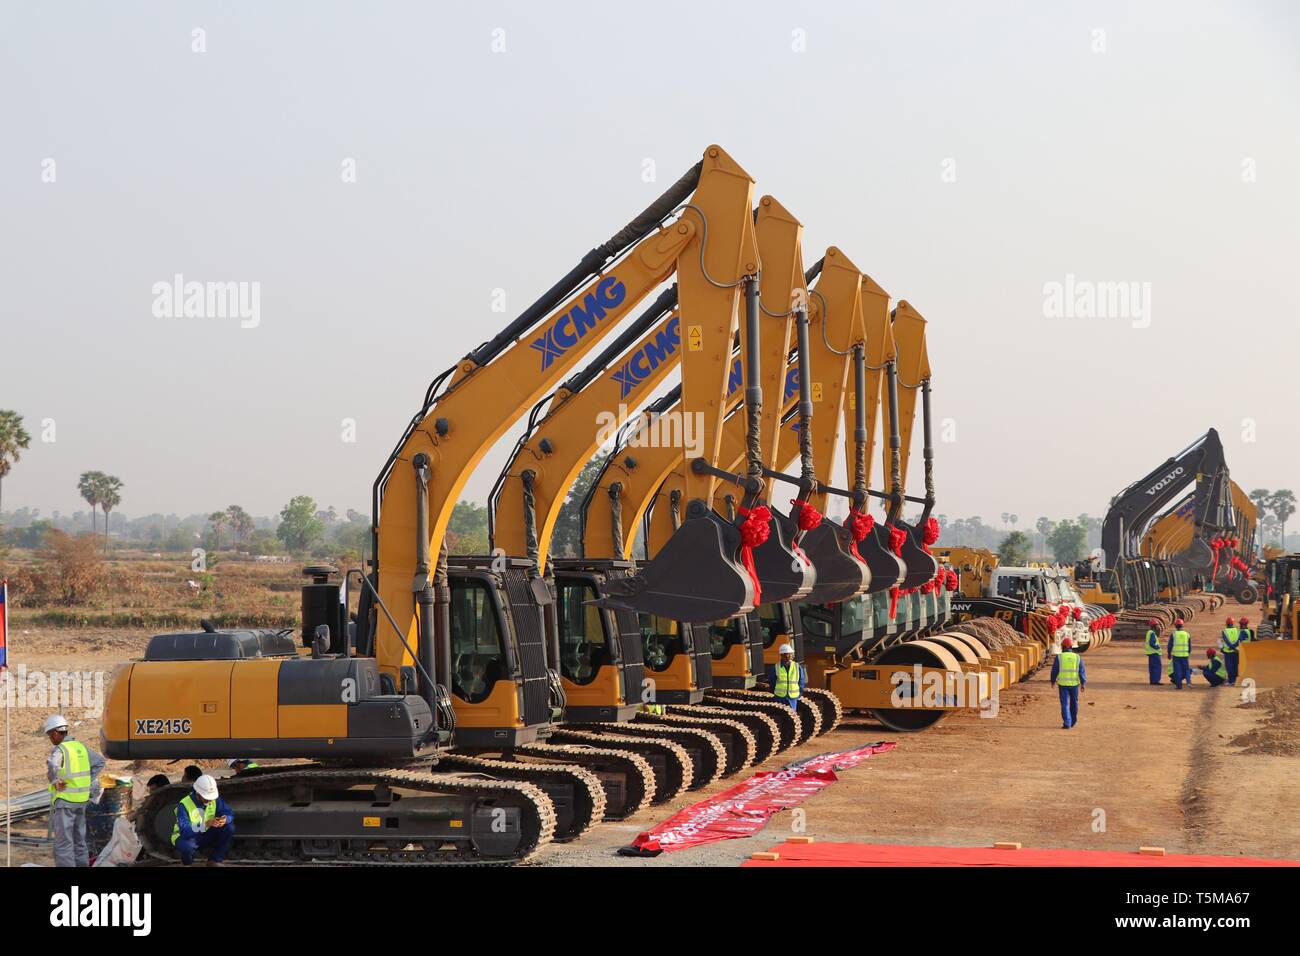 (190426) - Peking, April 26, 2019 (Xinhua) - Maschinen während der Spatenstich für den Bau einer 190-km-Autobahn erstreckt sich von der Hauptstadt Phnom Penh zum Tiefwasserhafen Provinz Preah Sihanouk in Kampong Speu, Kambodscha, 22. März 2019. China Straße und Brücke Corporation (CRBC) investiert rund zwei Milliarden US-Dollar für das Projekt, das vier Jahre konstruiert zu sein, angefangen von März 2019 bis März 2023. Die Schnellstraße wird zwei Fahrstreifen für jede Richtung und Fahrzeuge können mit einer Geschwindigkeit von 100 km pro Stunde haben. Aus Kambodscha, Äthiopien Geor Stockfoto